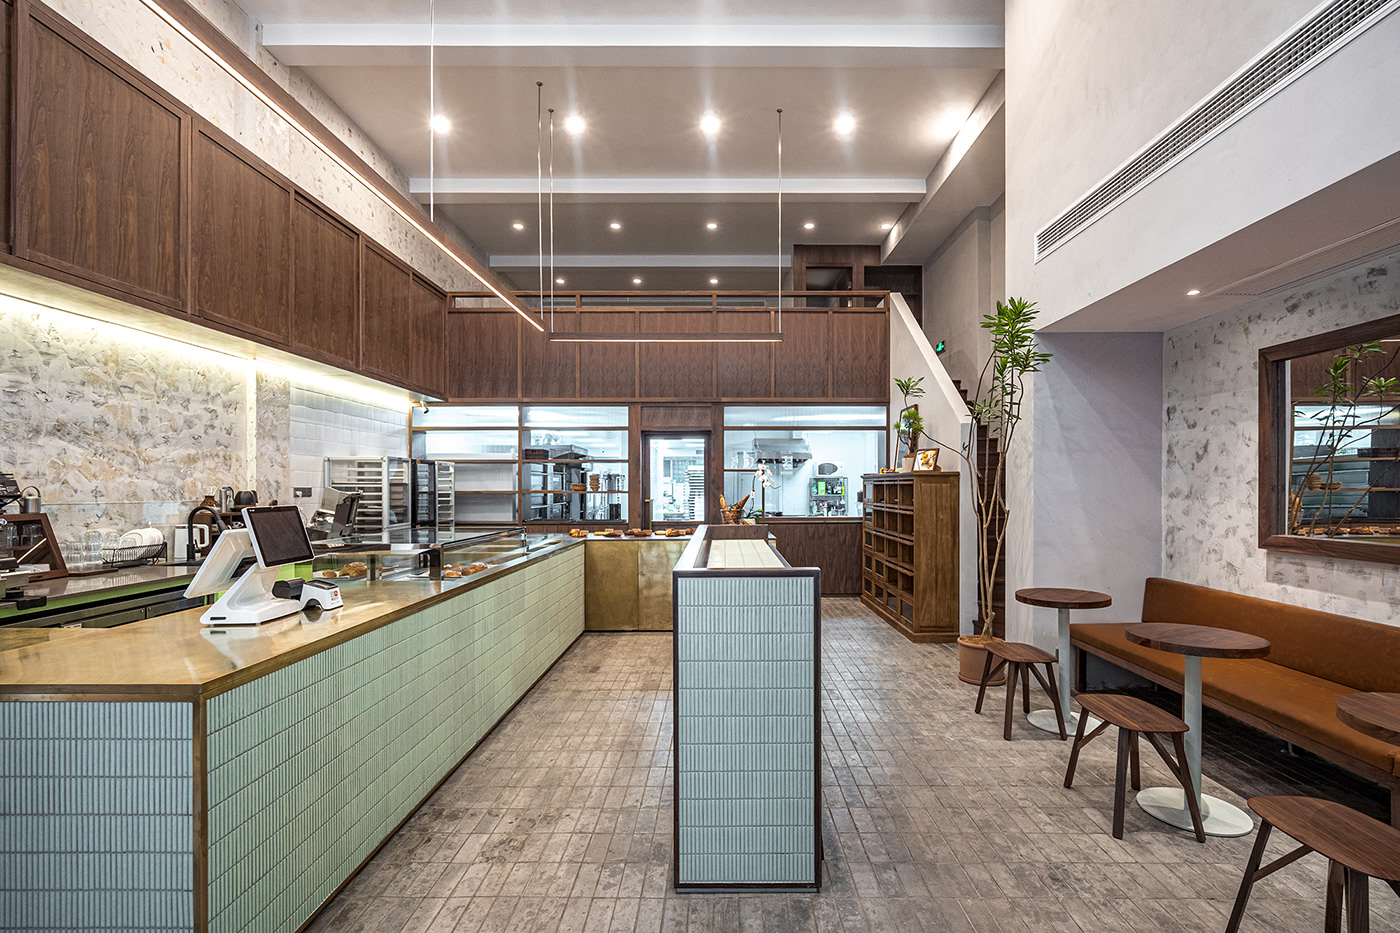 bakery cafe china design design ideas hcreates Interior Interior Architecture interior design  shanghai